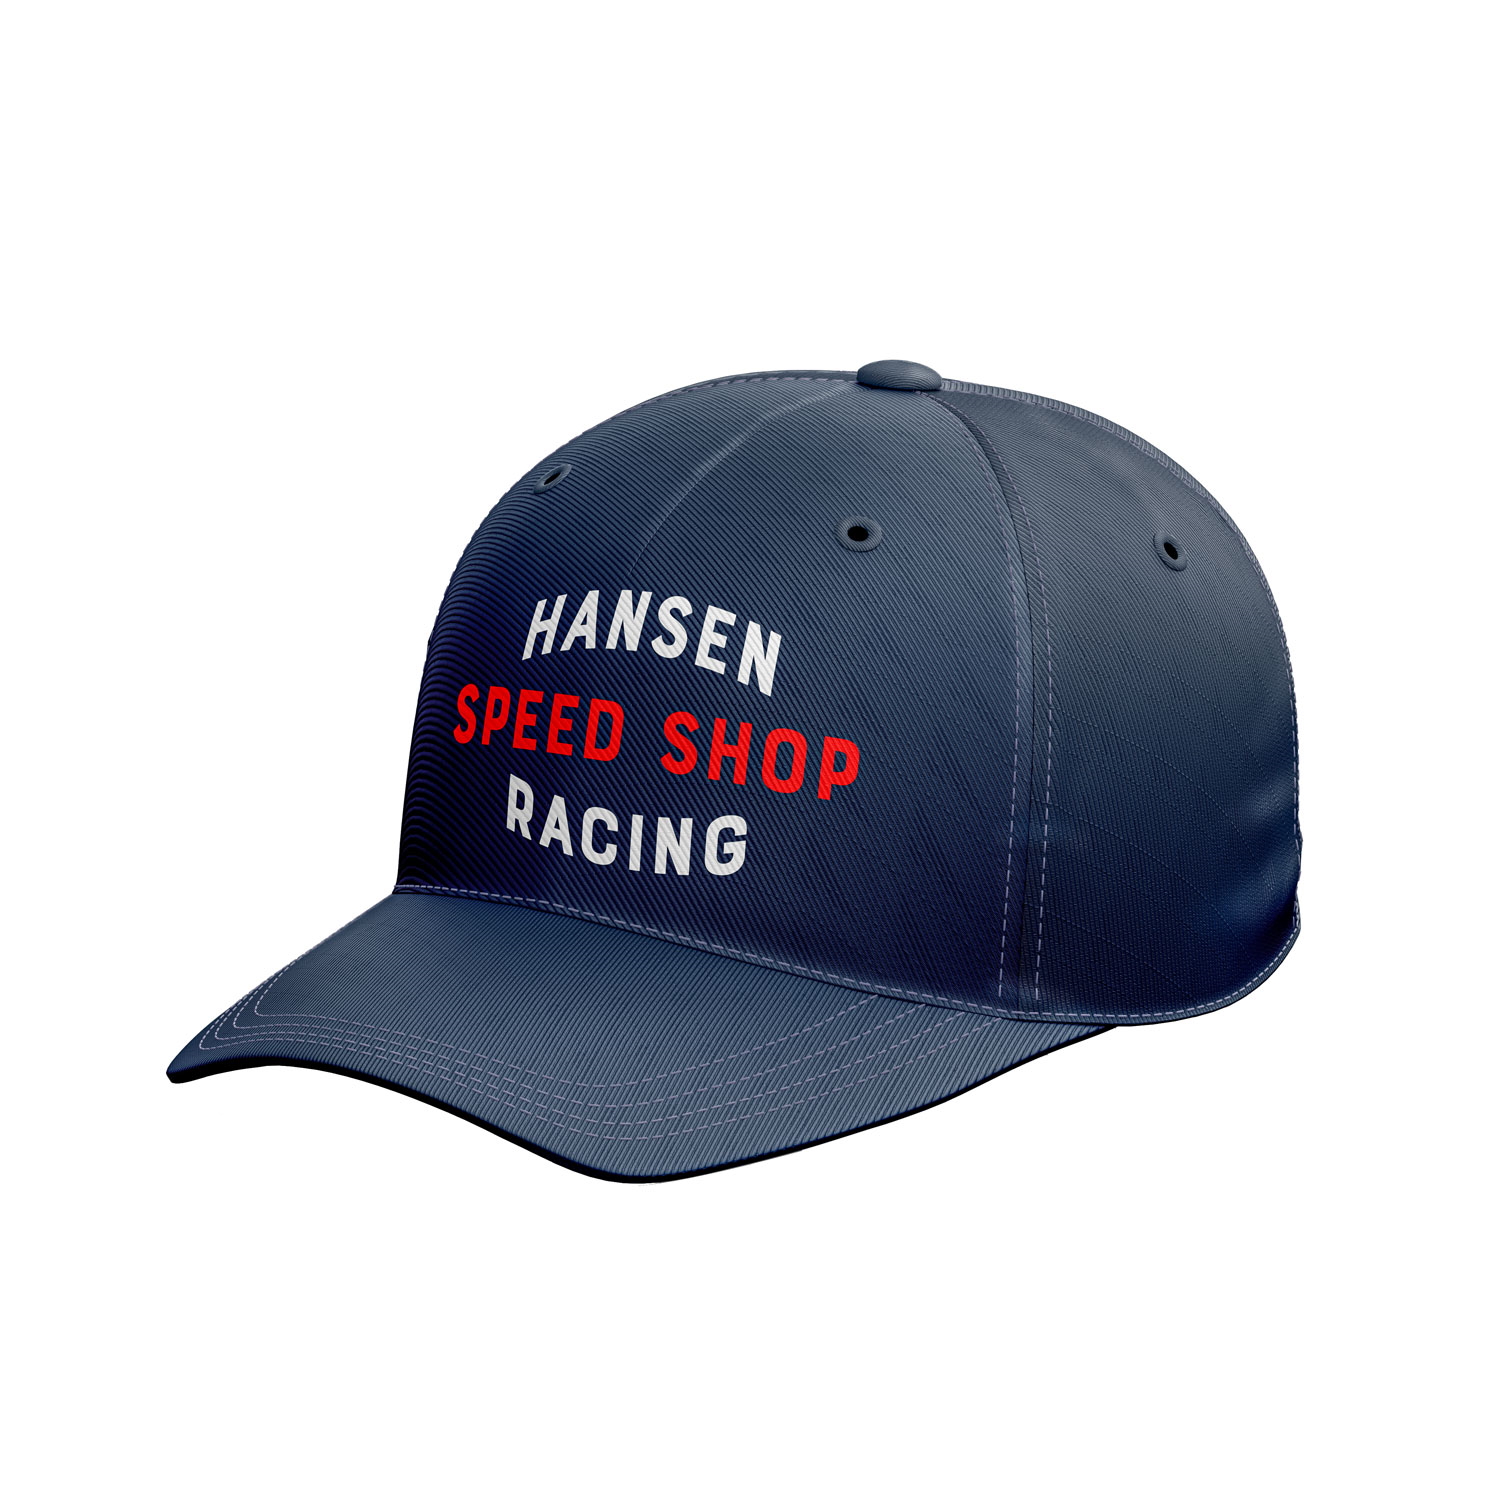 Keps Hansen Racing Speedshop